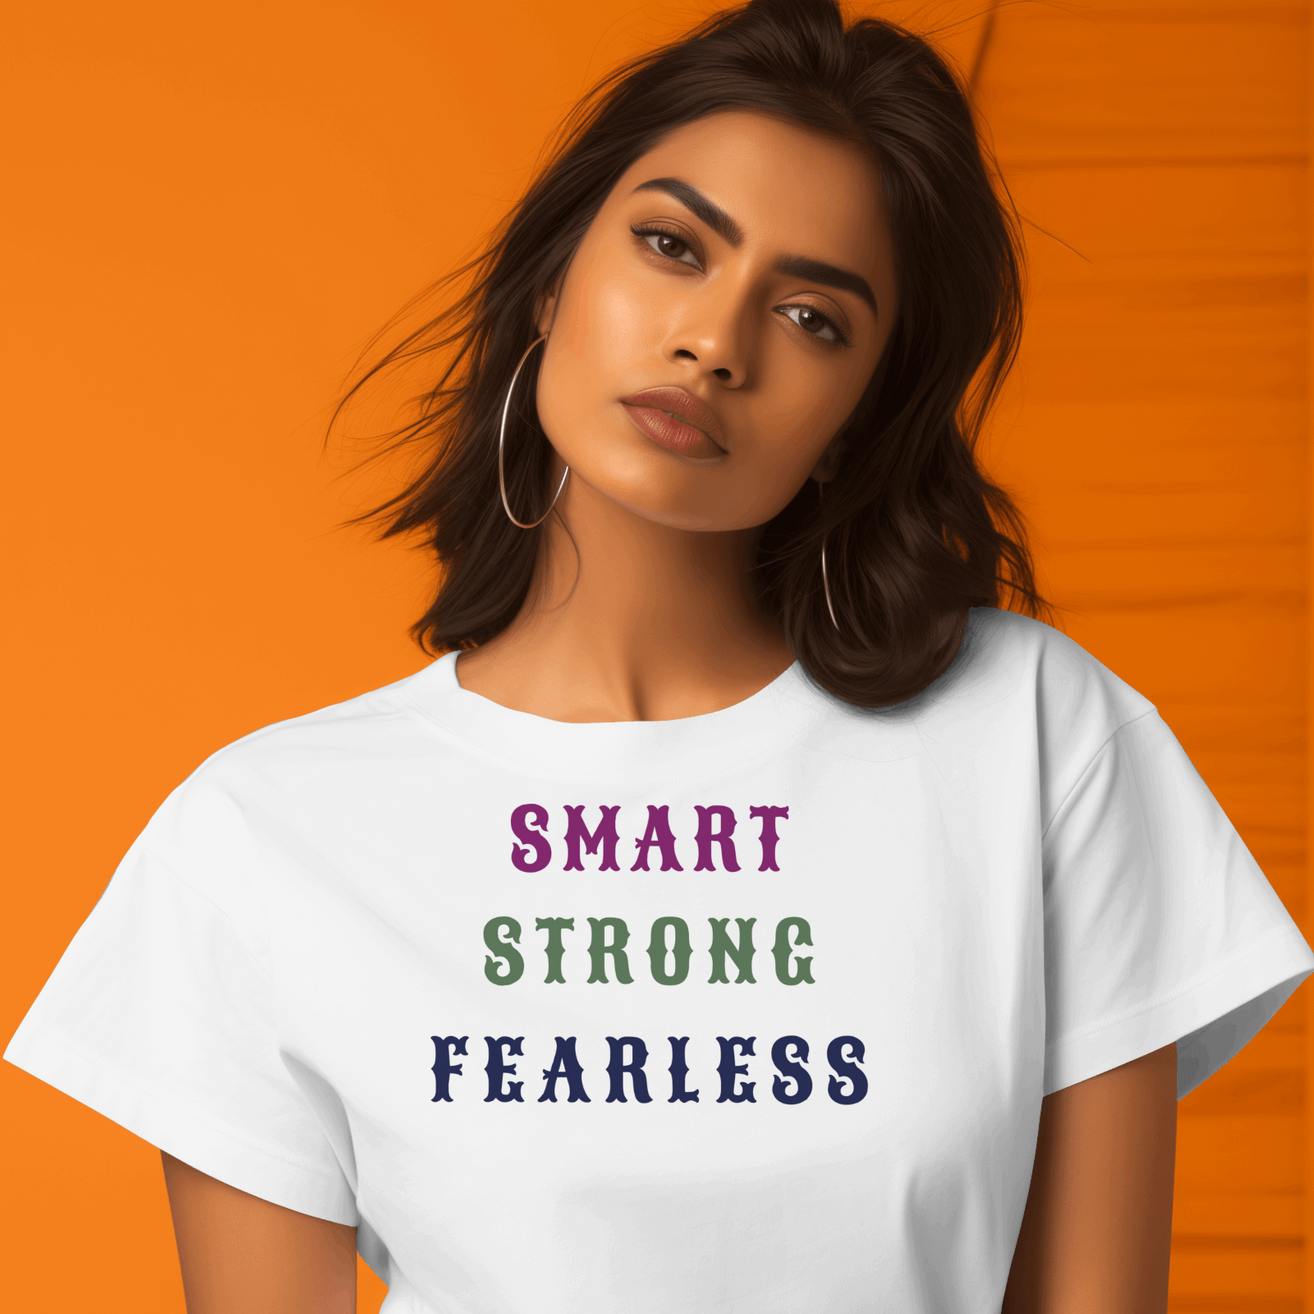 Shop this "Smart, Strong, Fearless" Women's T-Shirt|Storeily